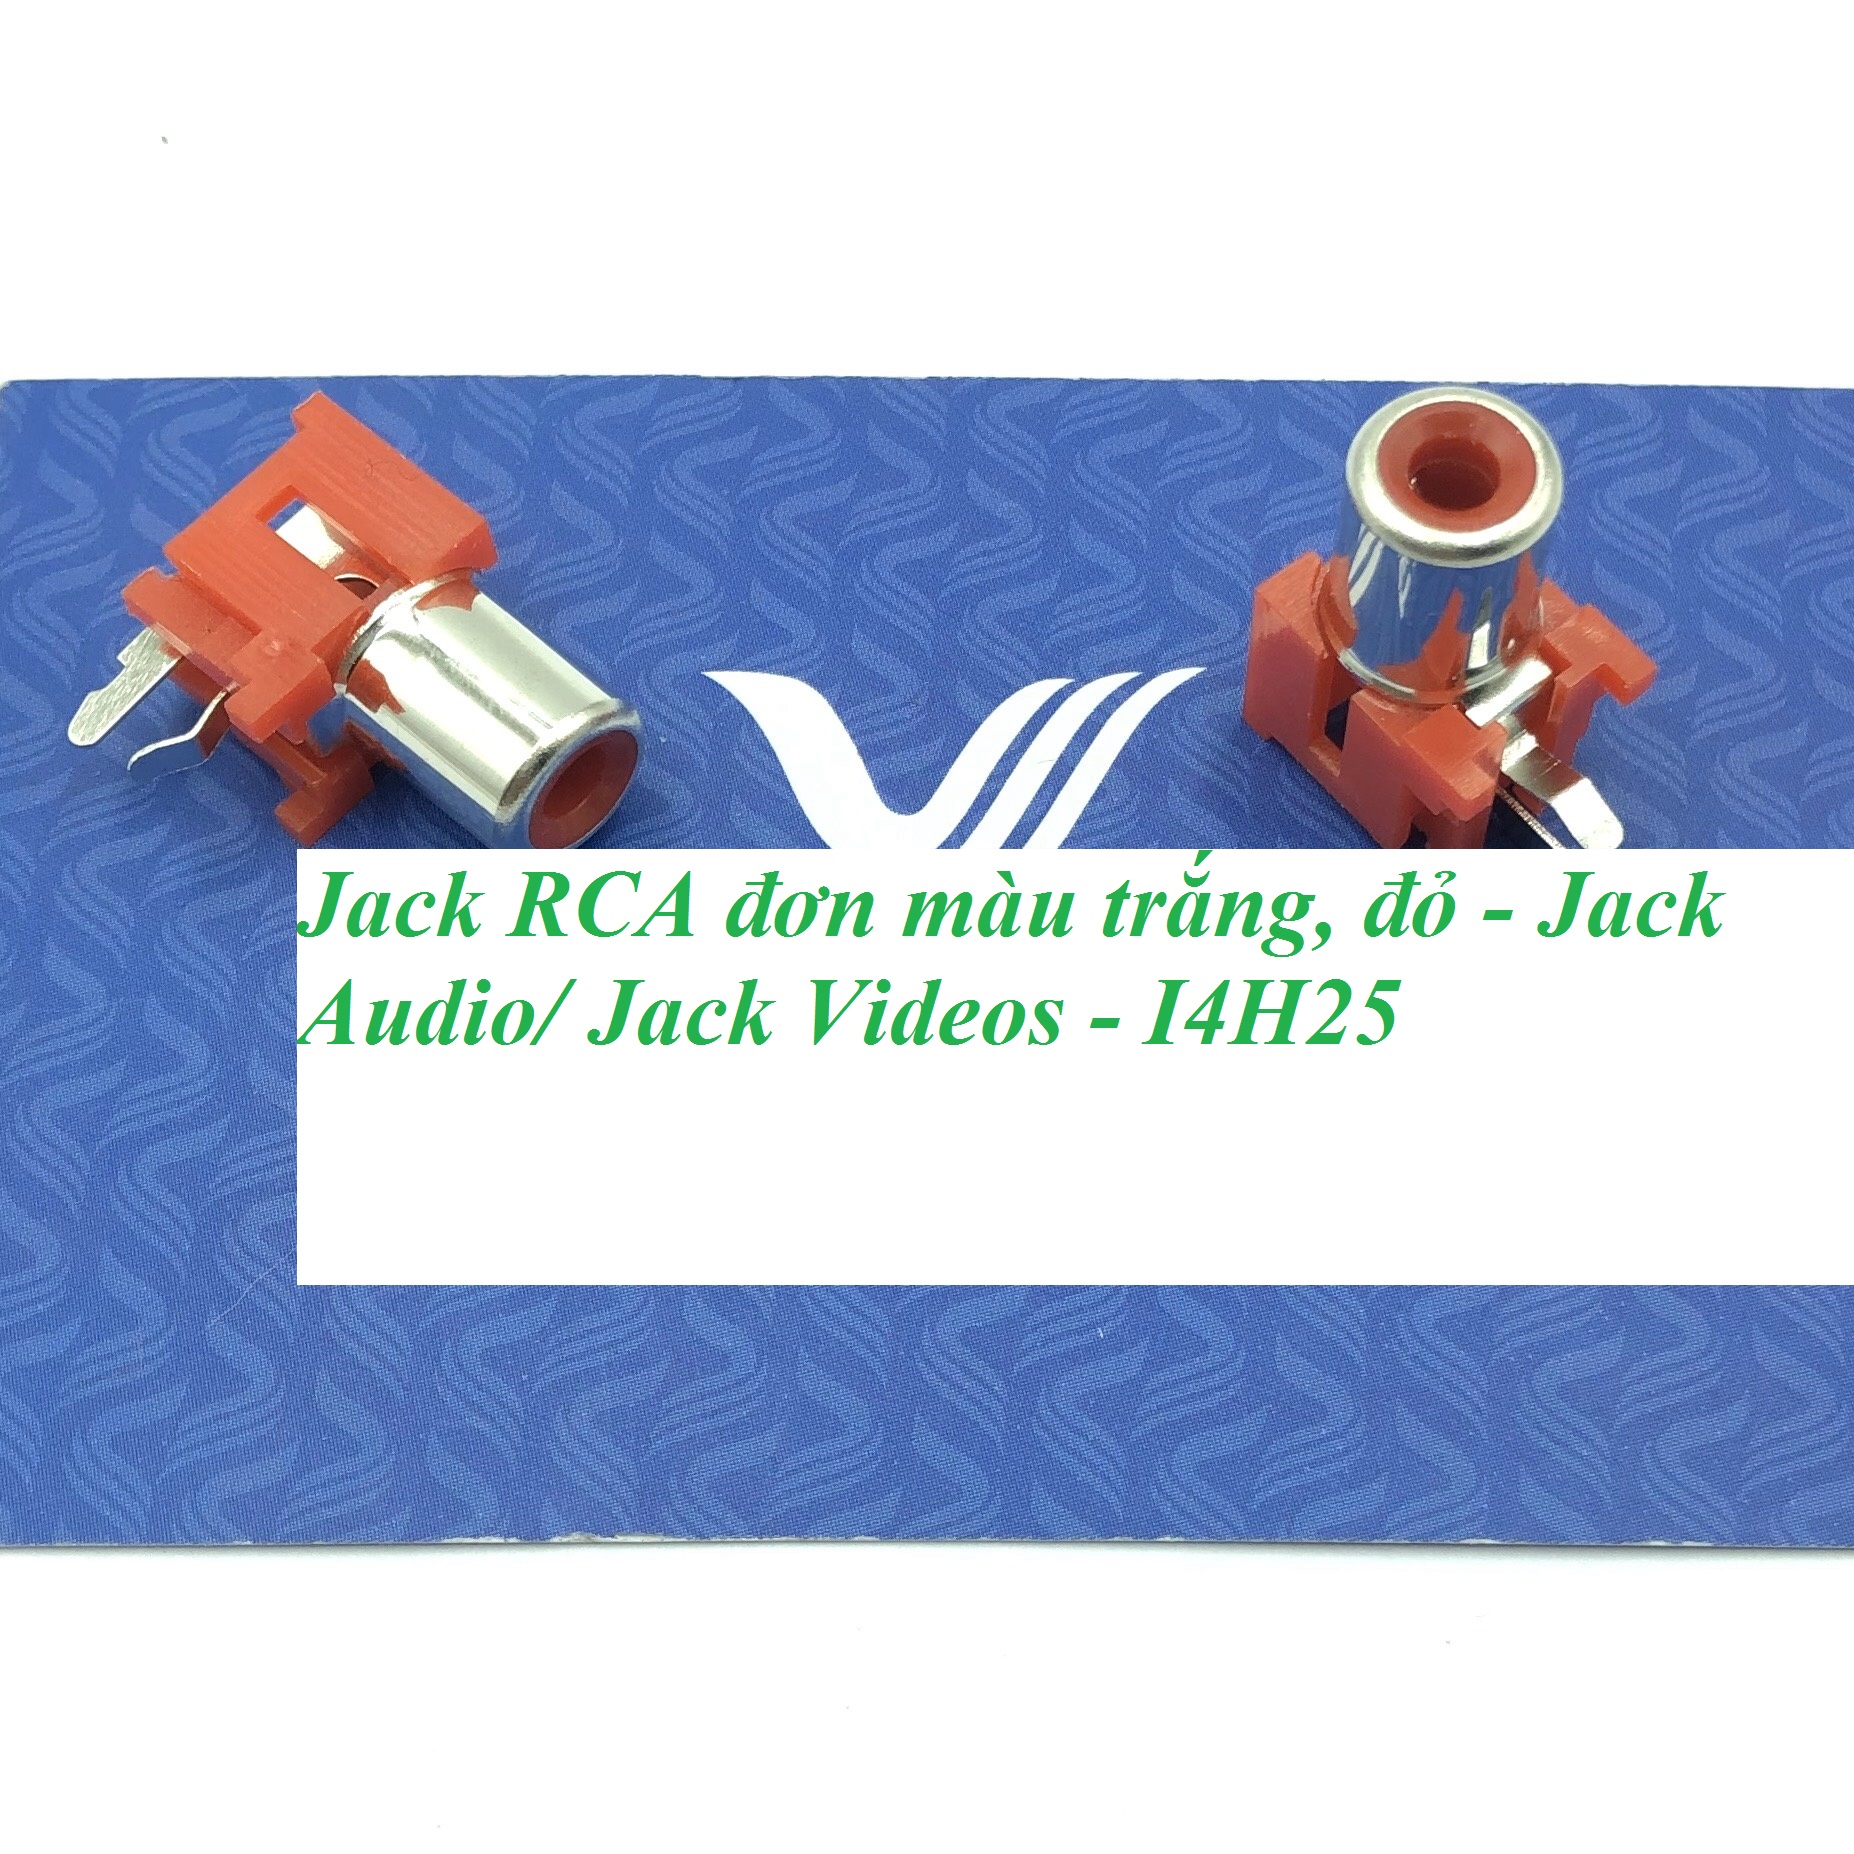 Jack RCA đơn màu trắng, đỏ - Jack Audio/ Jack Videos - I4H25